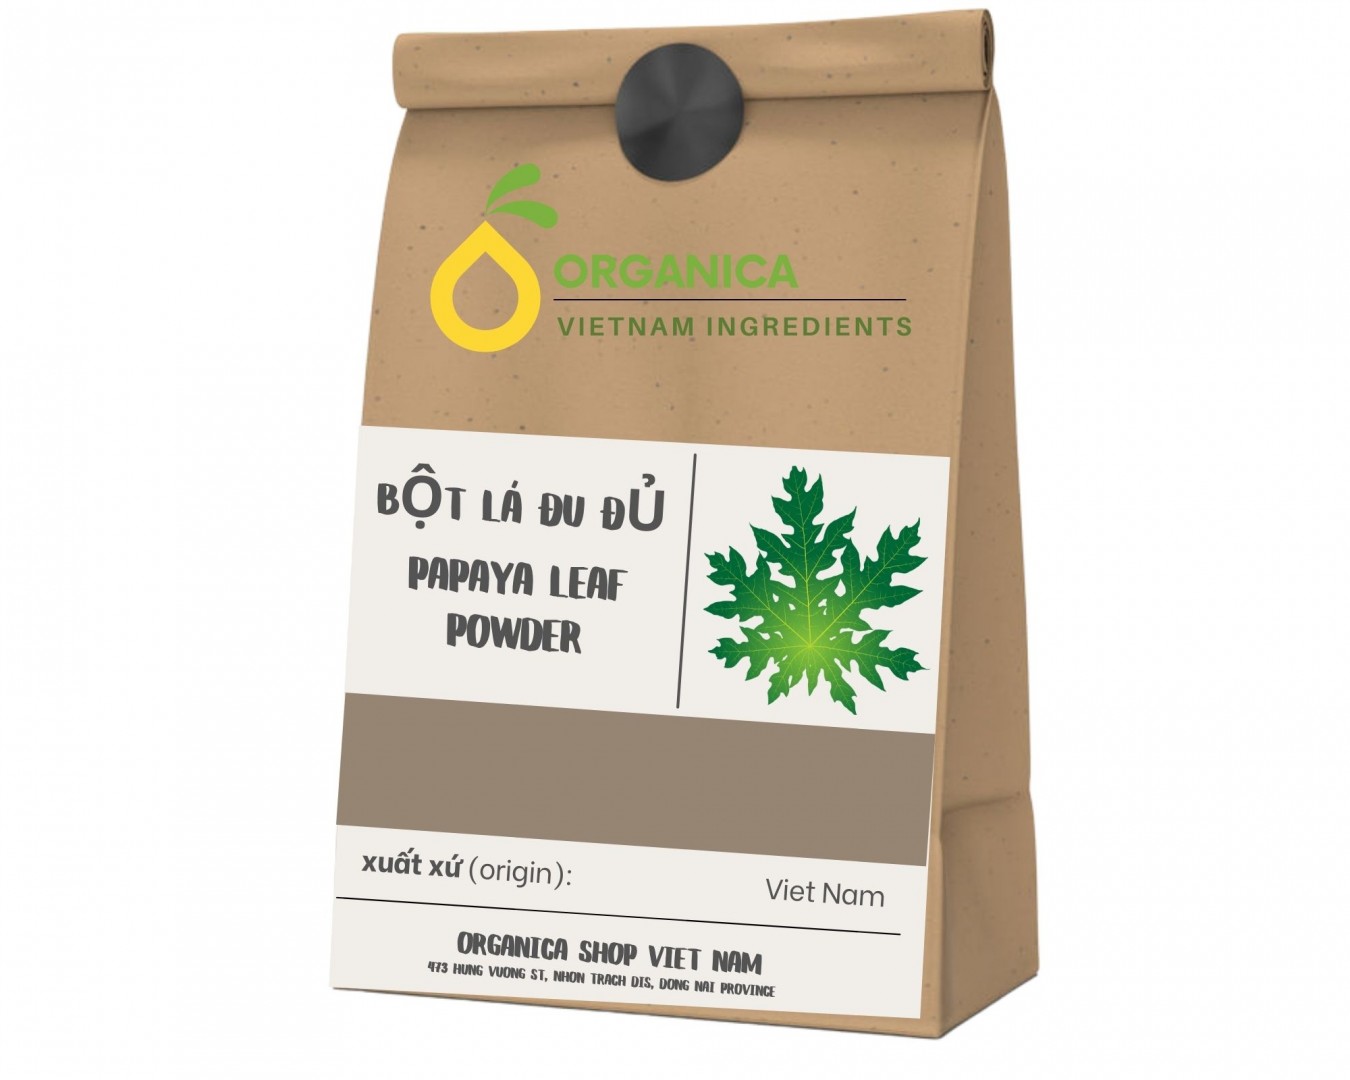 Bột lá đu đủ (Papaya Leaf Powder)